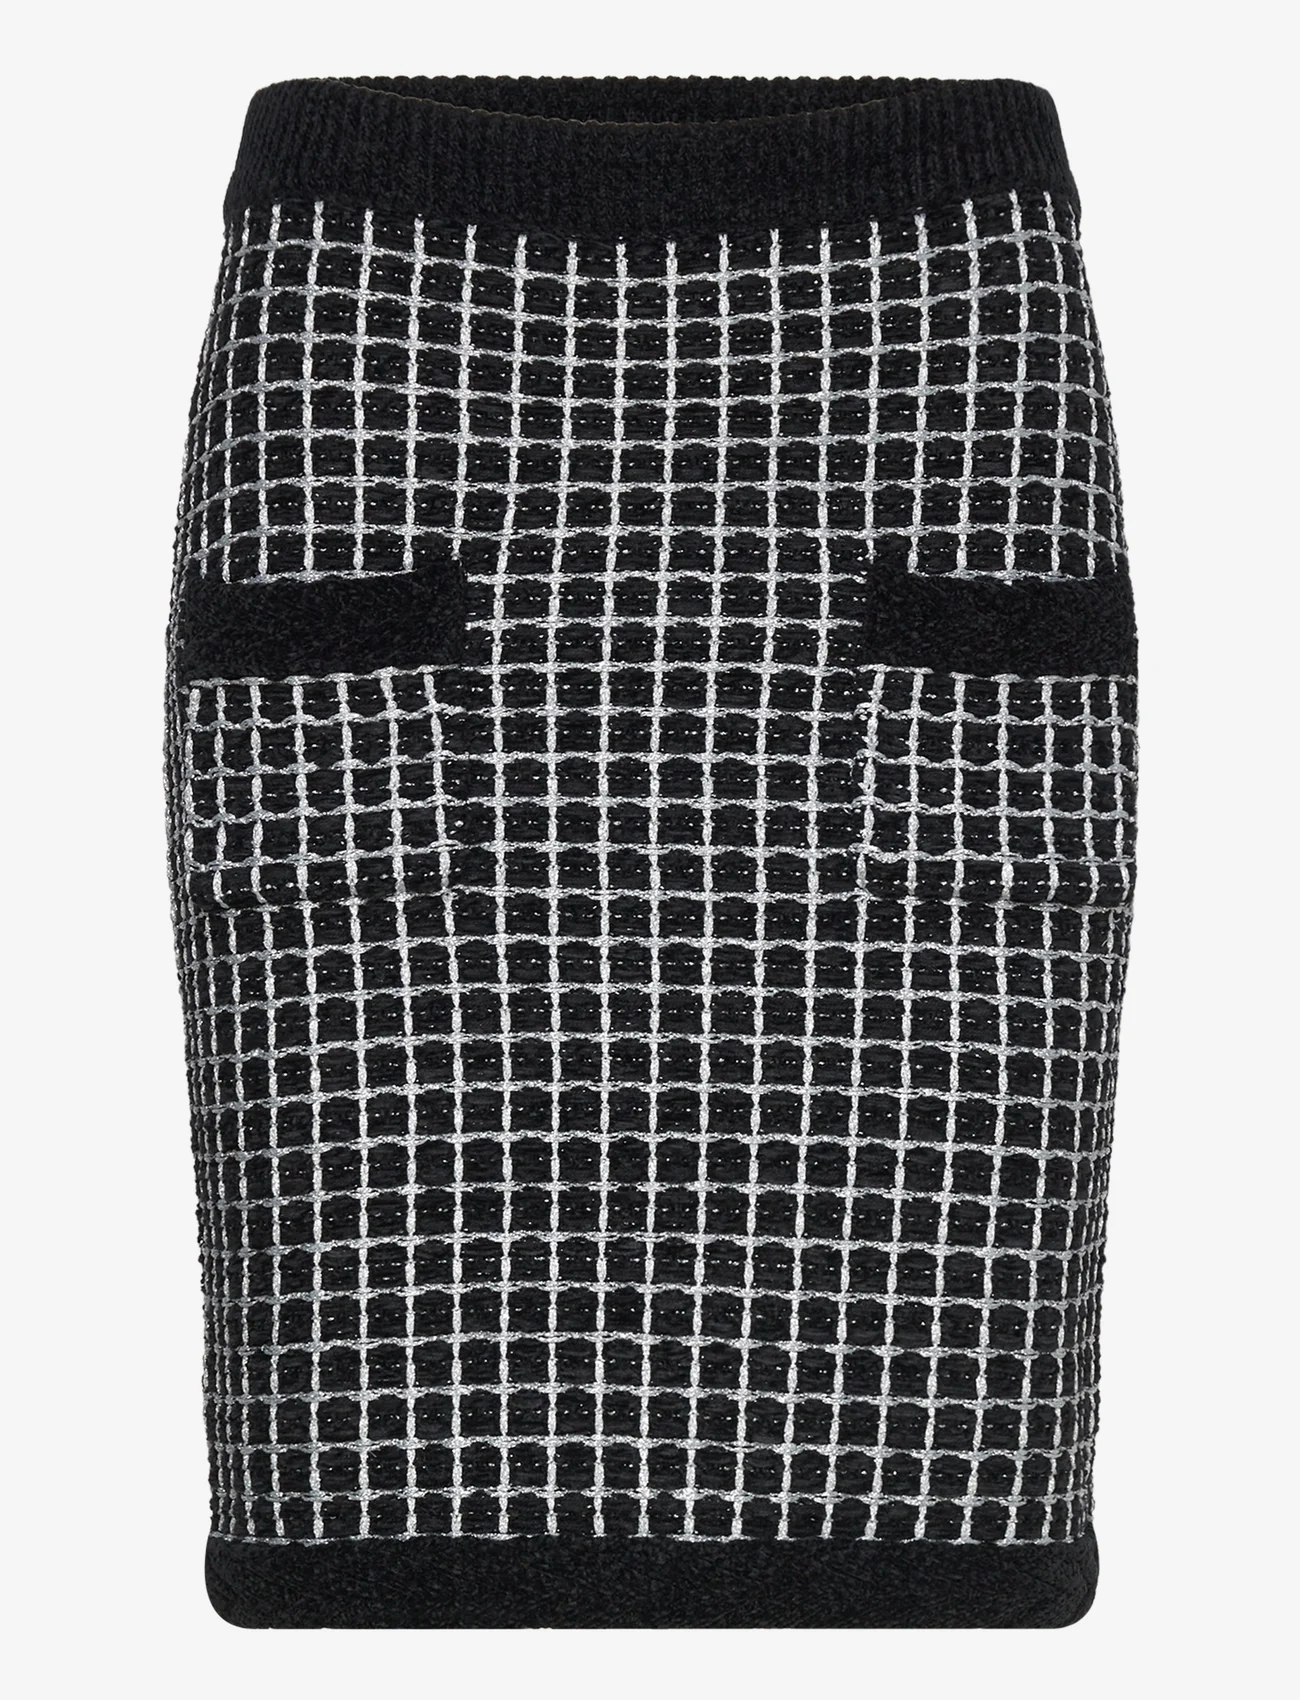 Karl Lagerfeld - boucle knit skirt - stickade kjolar - black/silver - 0